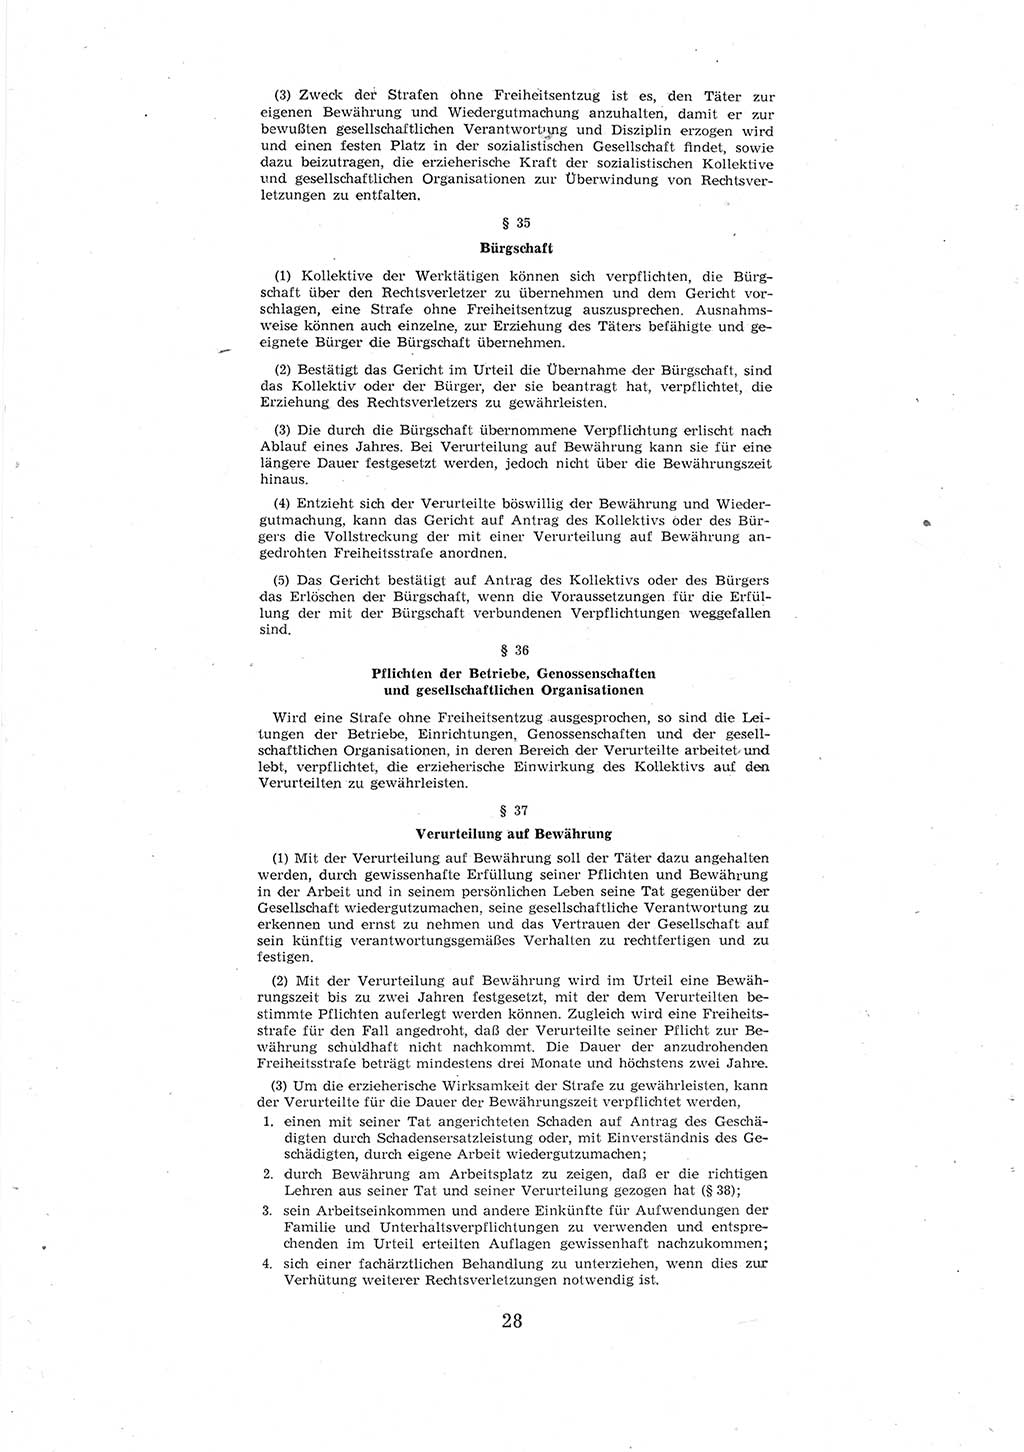 Entwurf des Strafgesetzbuches (StGB) der Deutschen Demokratischen Republik (DDR) 1967, Seite 28 (Entw. StGB DDR 1967, S. 28)